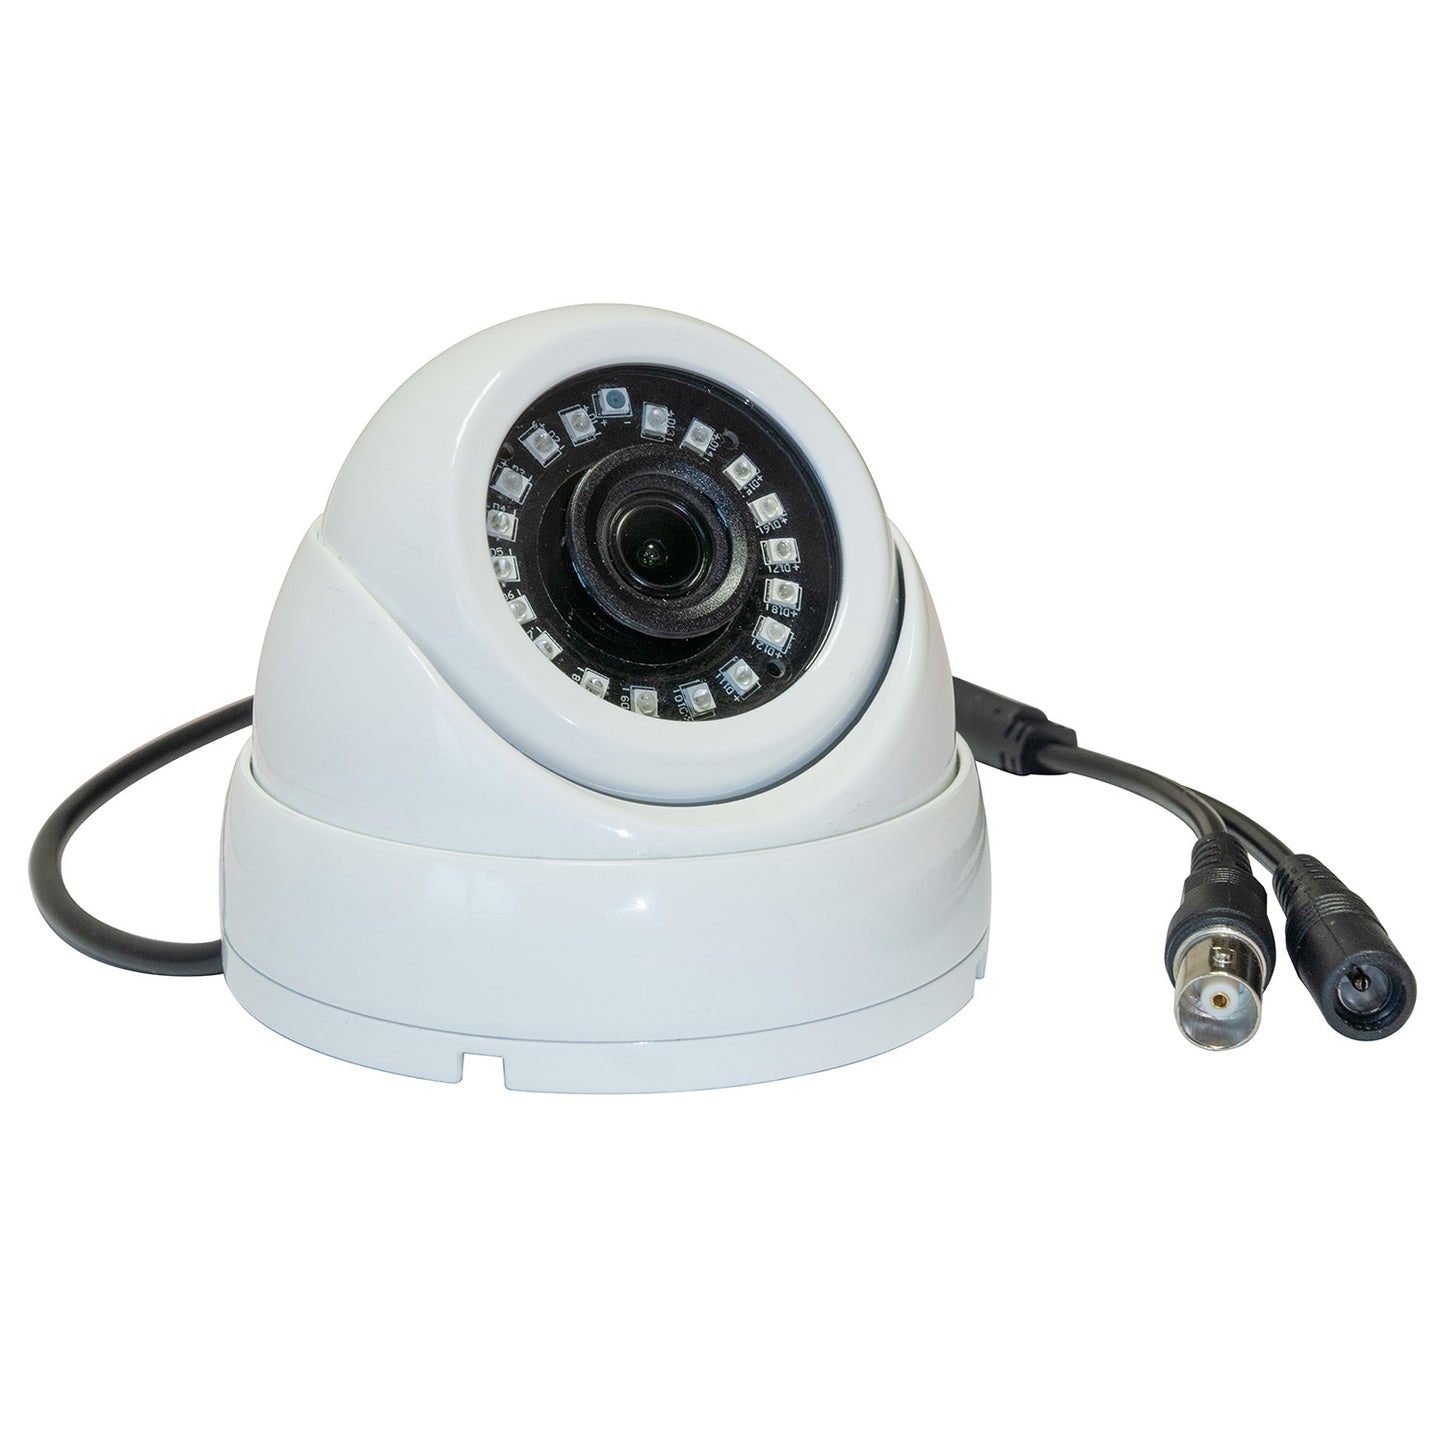 5MP dome CCTV